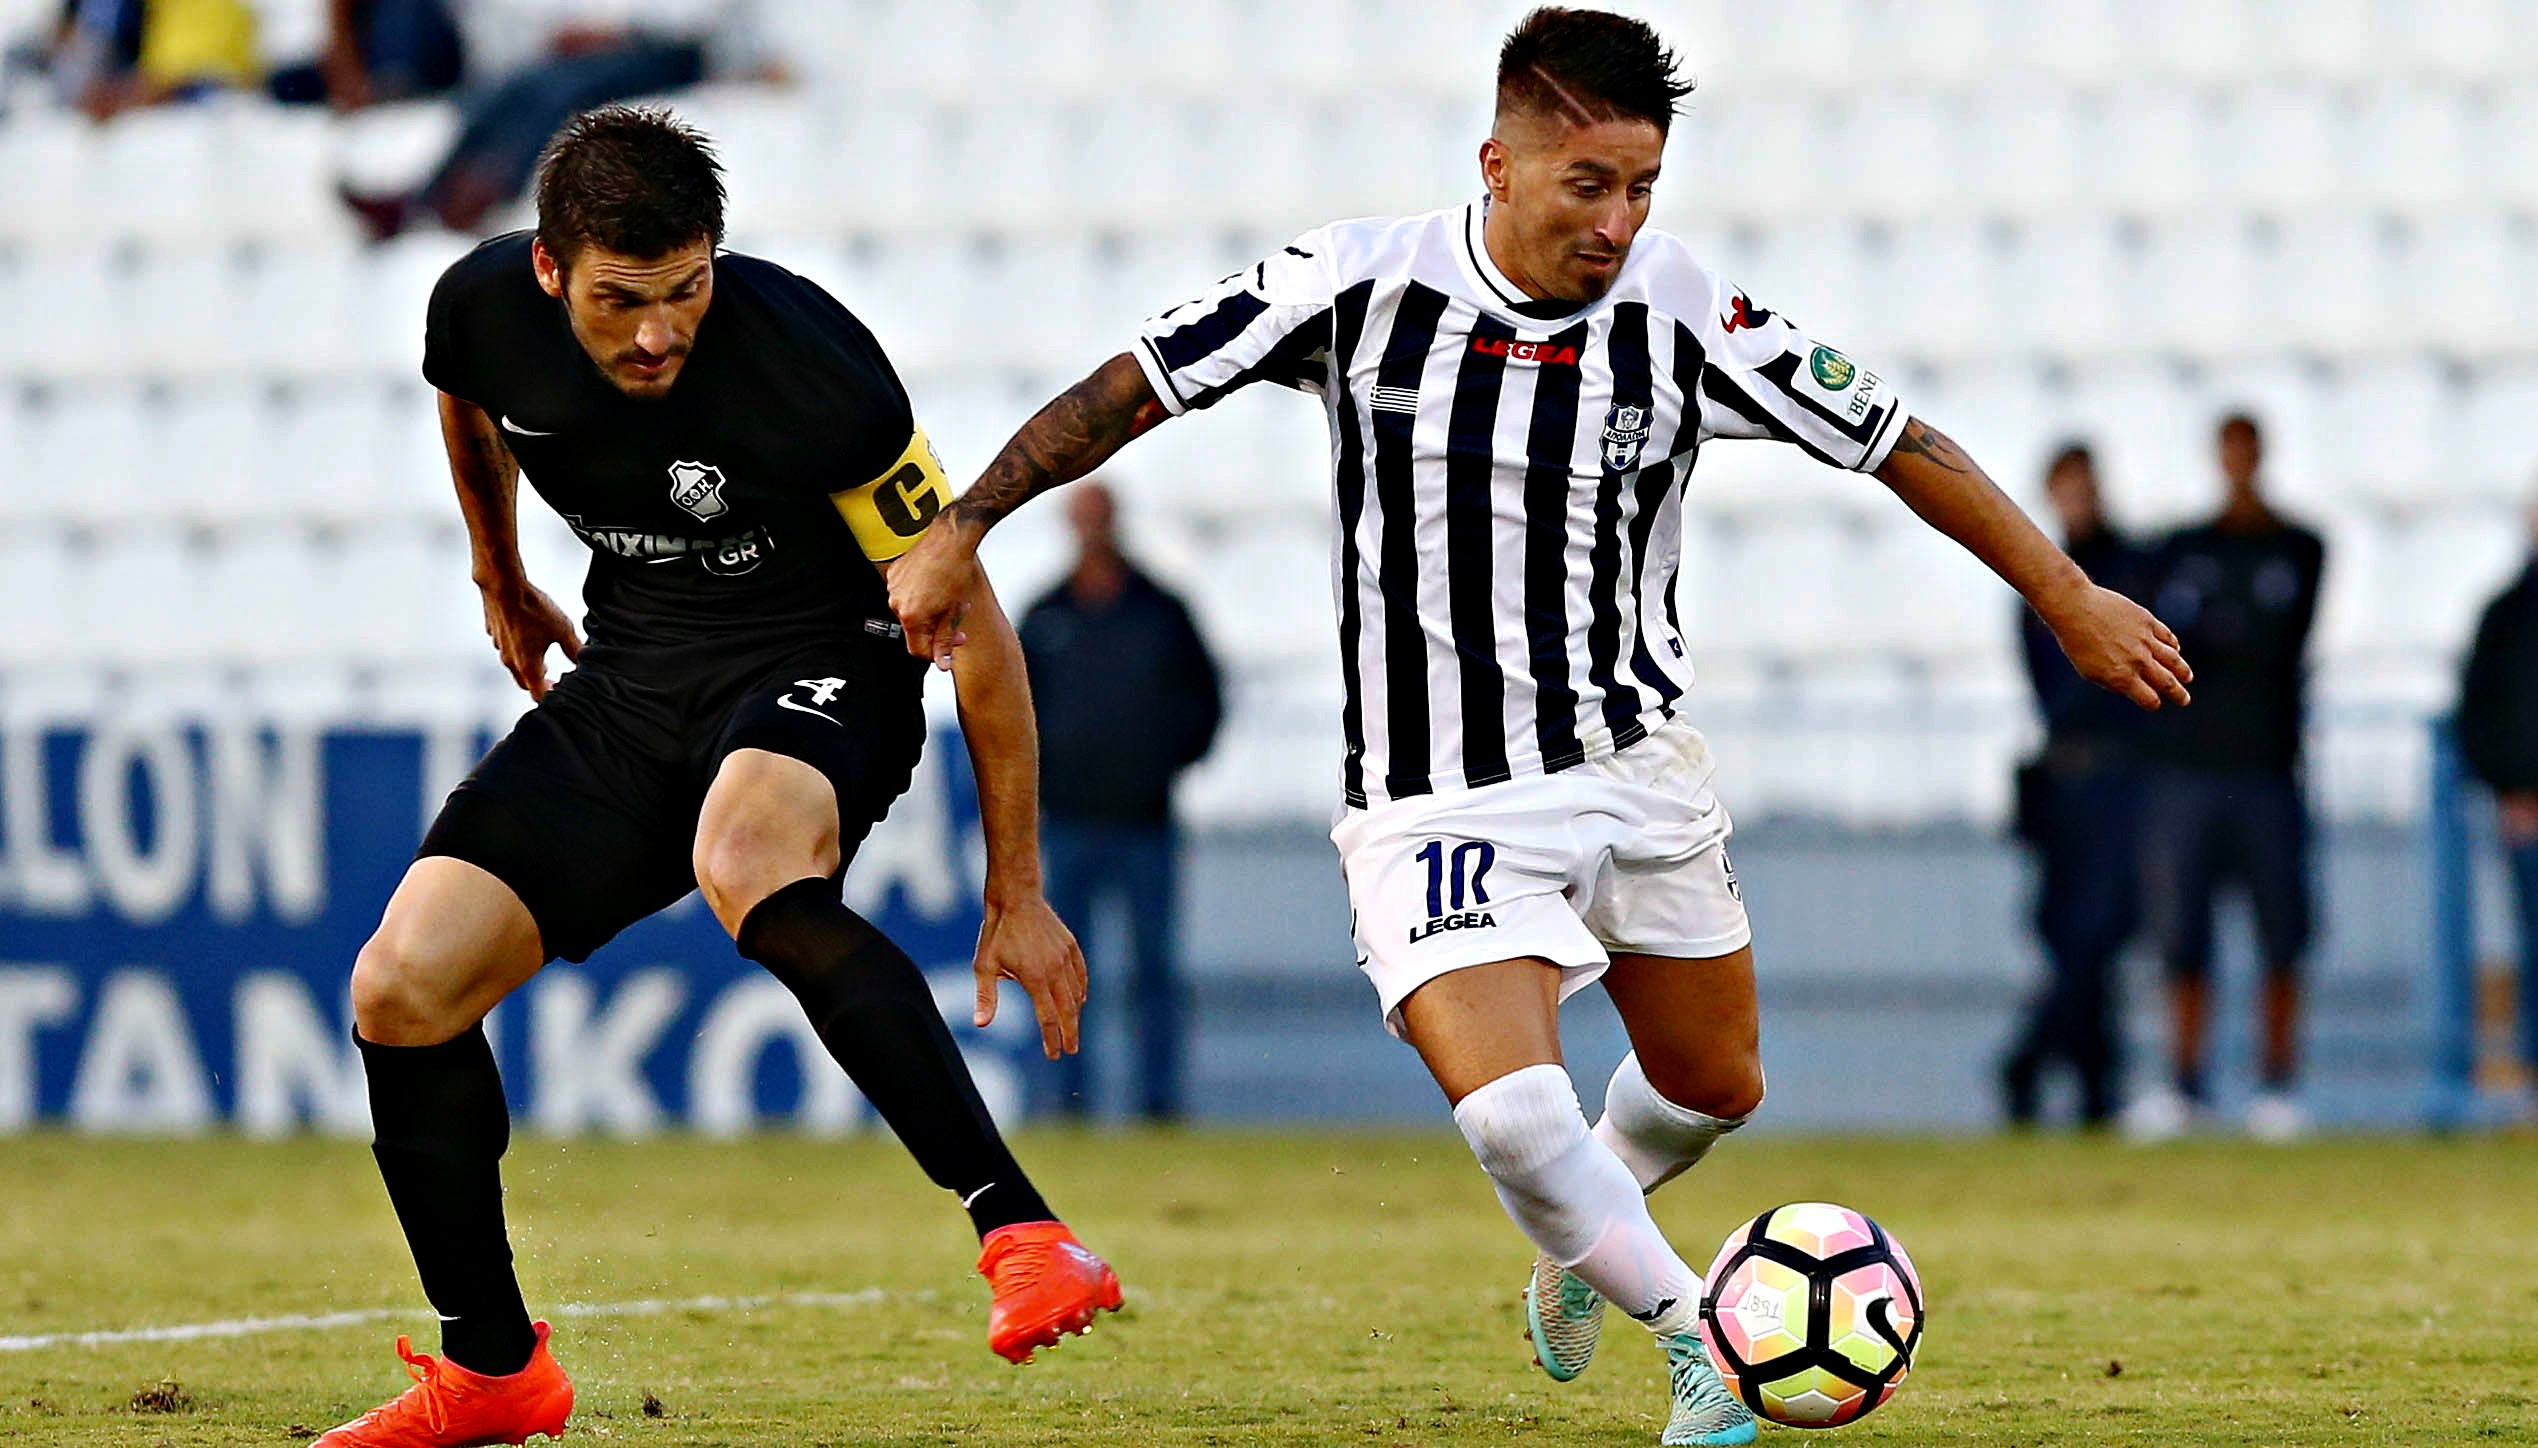 Απόλλων Σμύρνης - ΟΦΗ 0-0 | Football League | gazzetta.gr